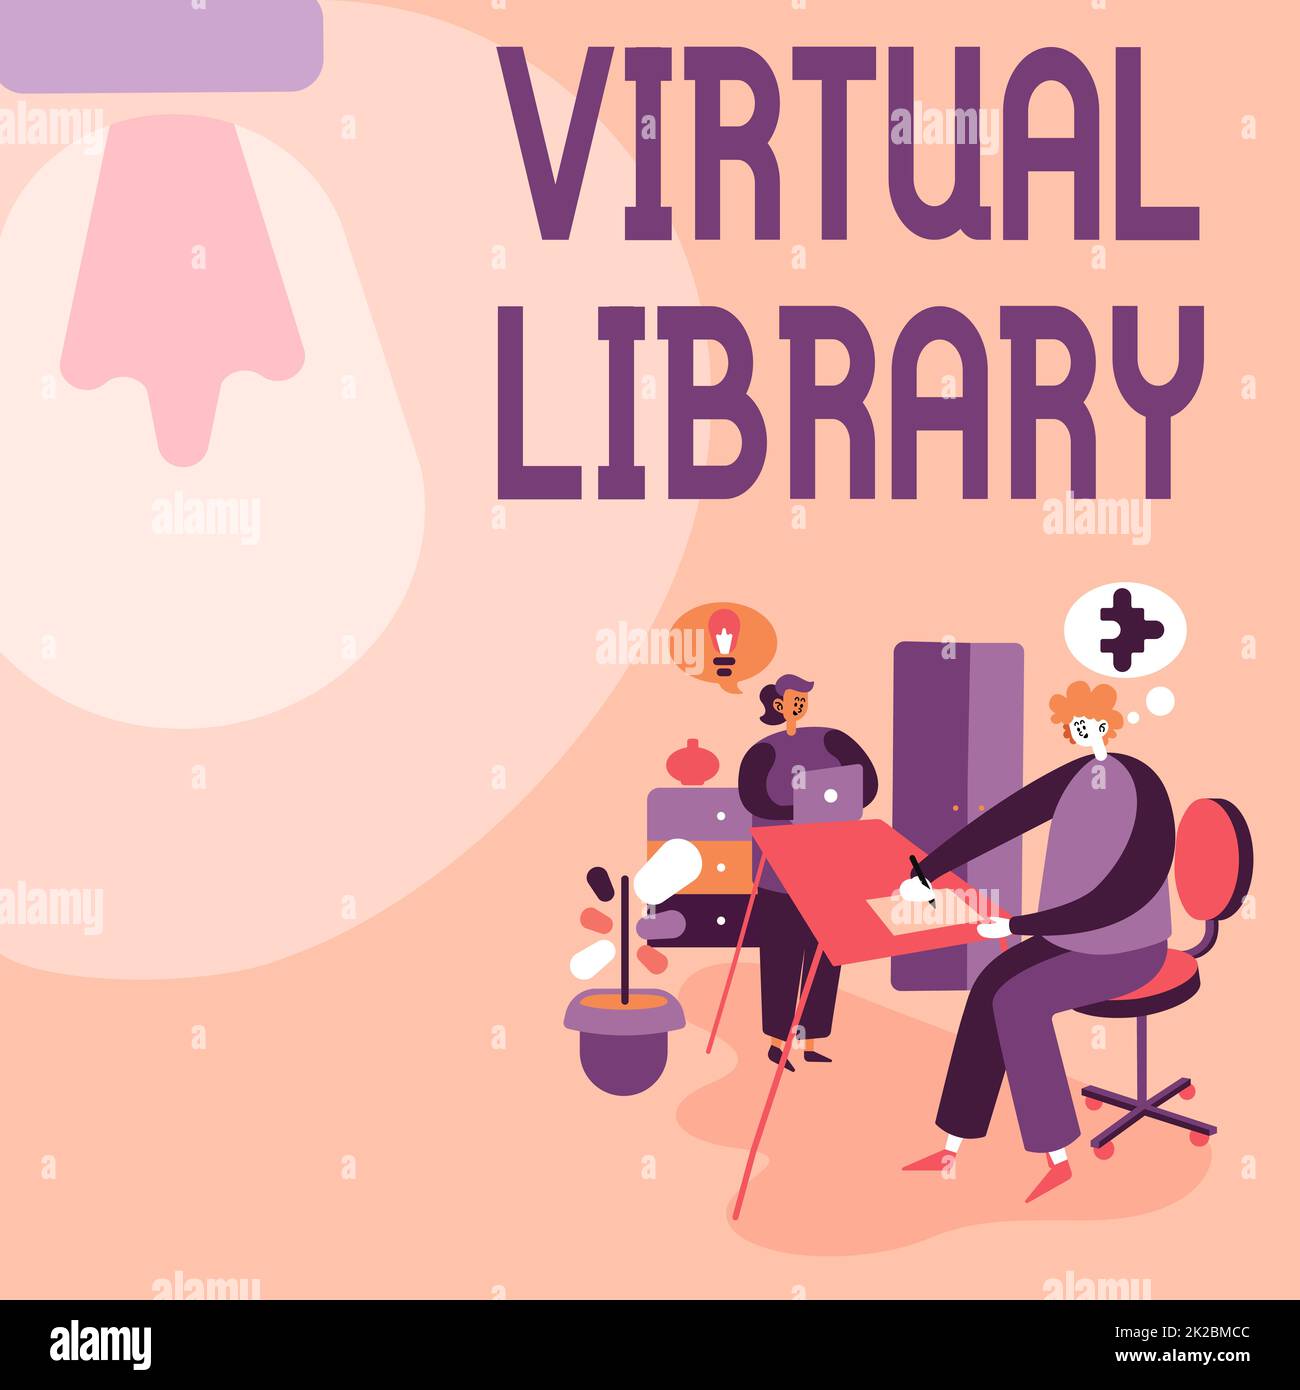 Affiche la bibliothèque virtuelle. Concept Internet Bibliothèque virtuelle partenaires partager de nouvelles idées pour améliorer les compétences stratégies de travail. Banque D'Images